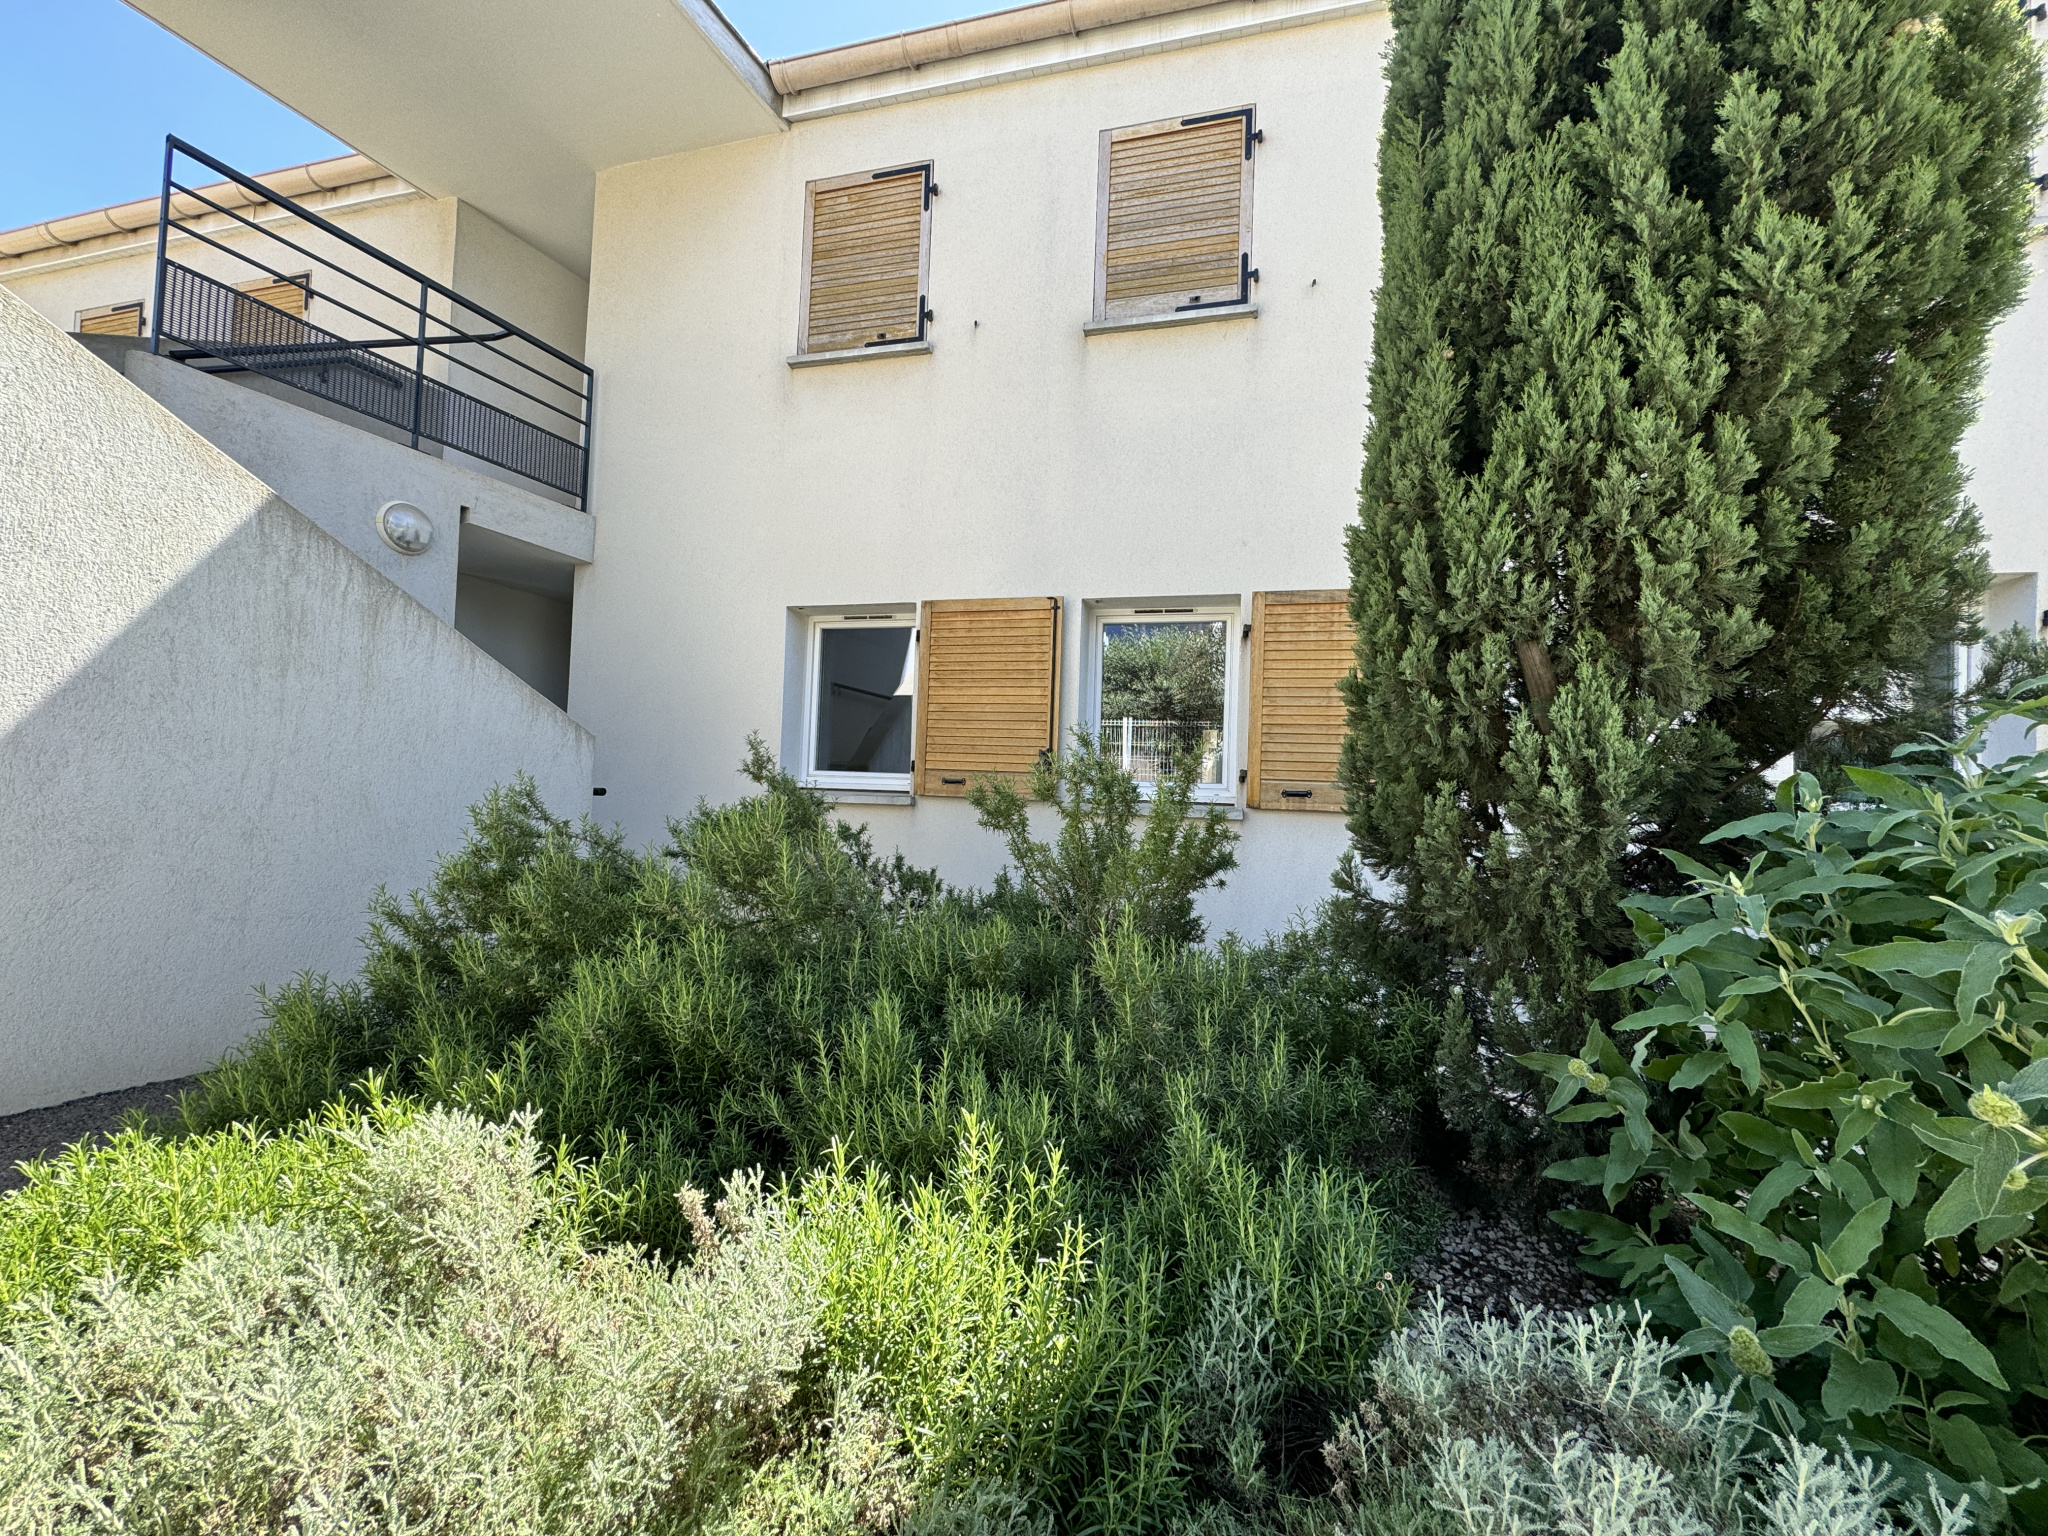  Appartement de type 4 avec terrasse et jardinet à Martigues